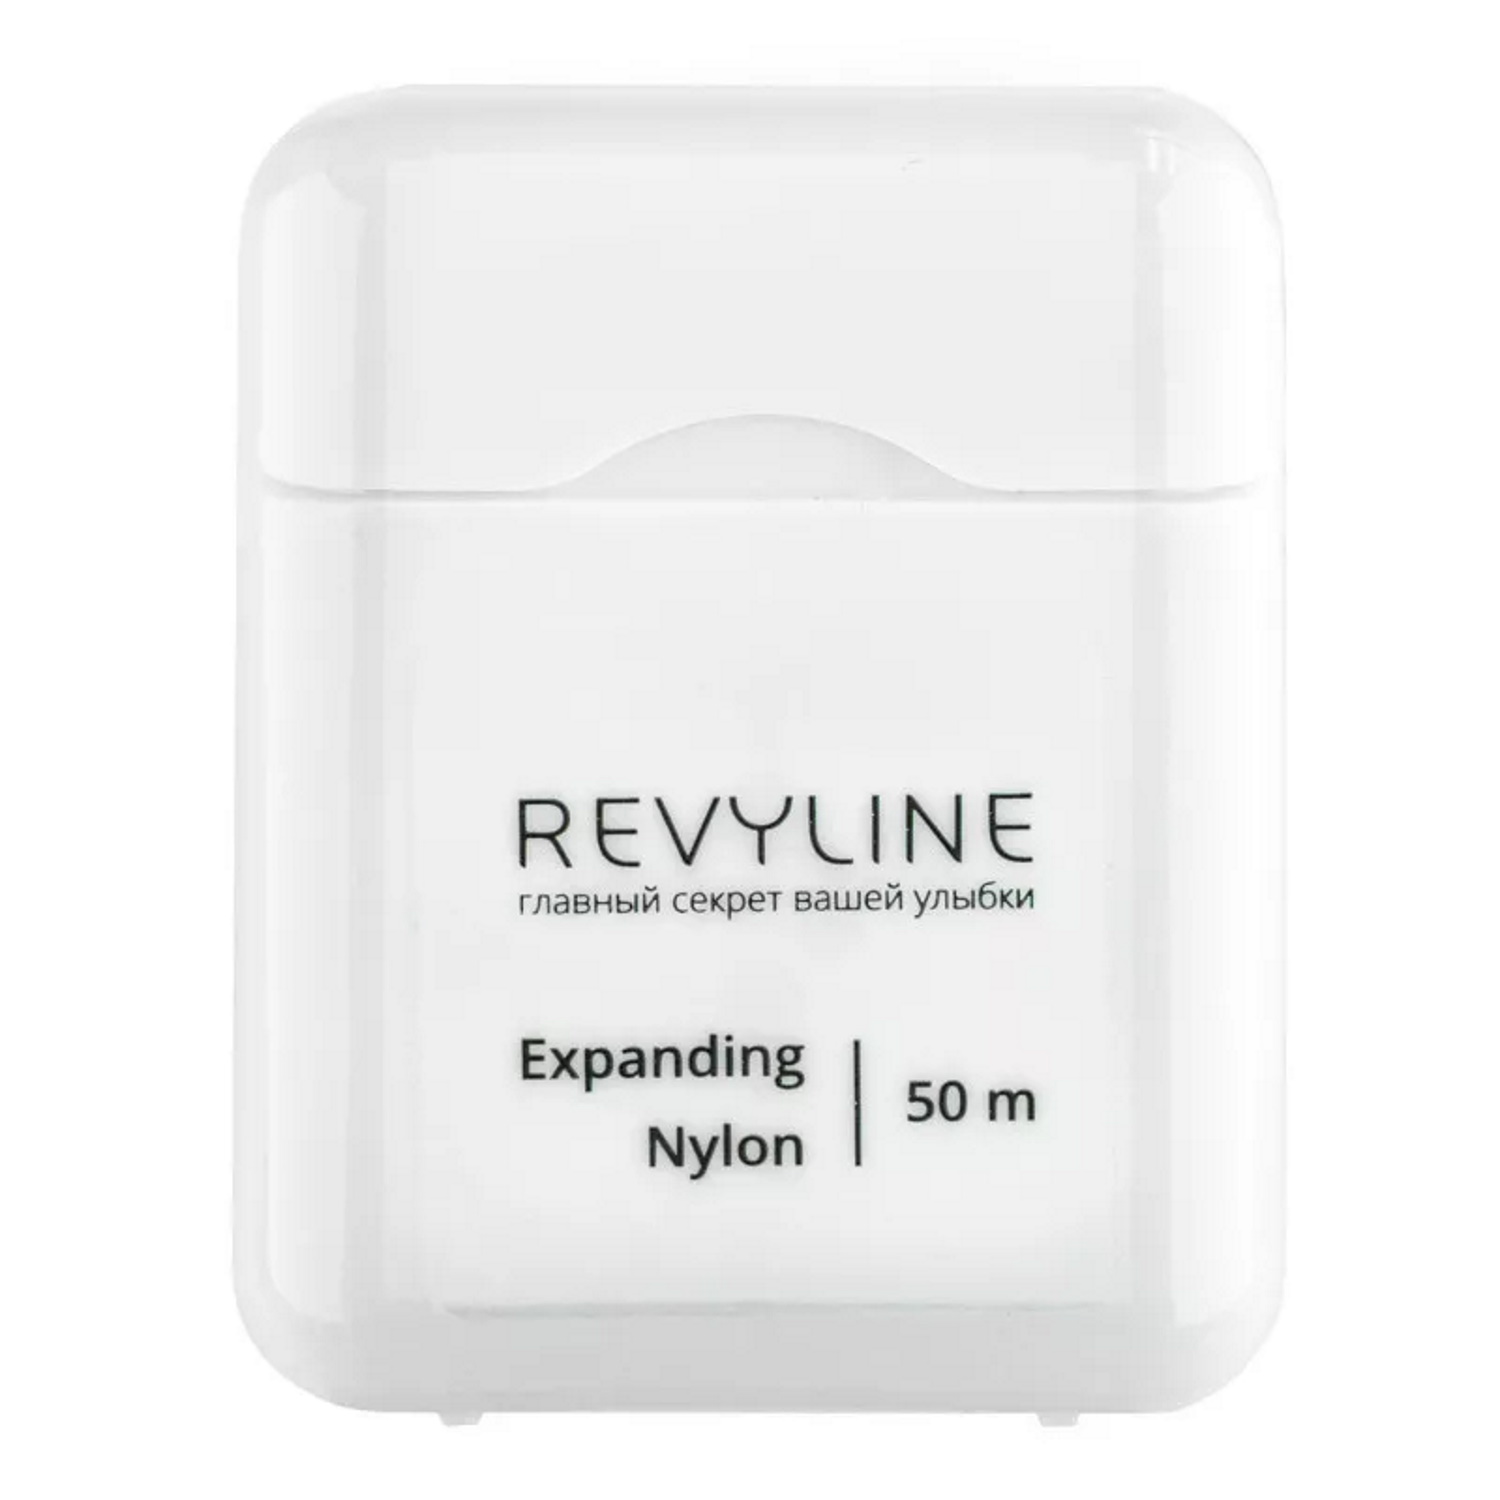 Зубная нить Revyline 840D Expanding floss нейлон вощеная 50 м - фото 2